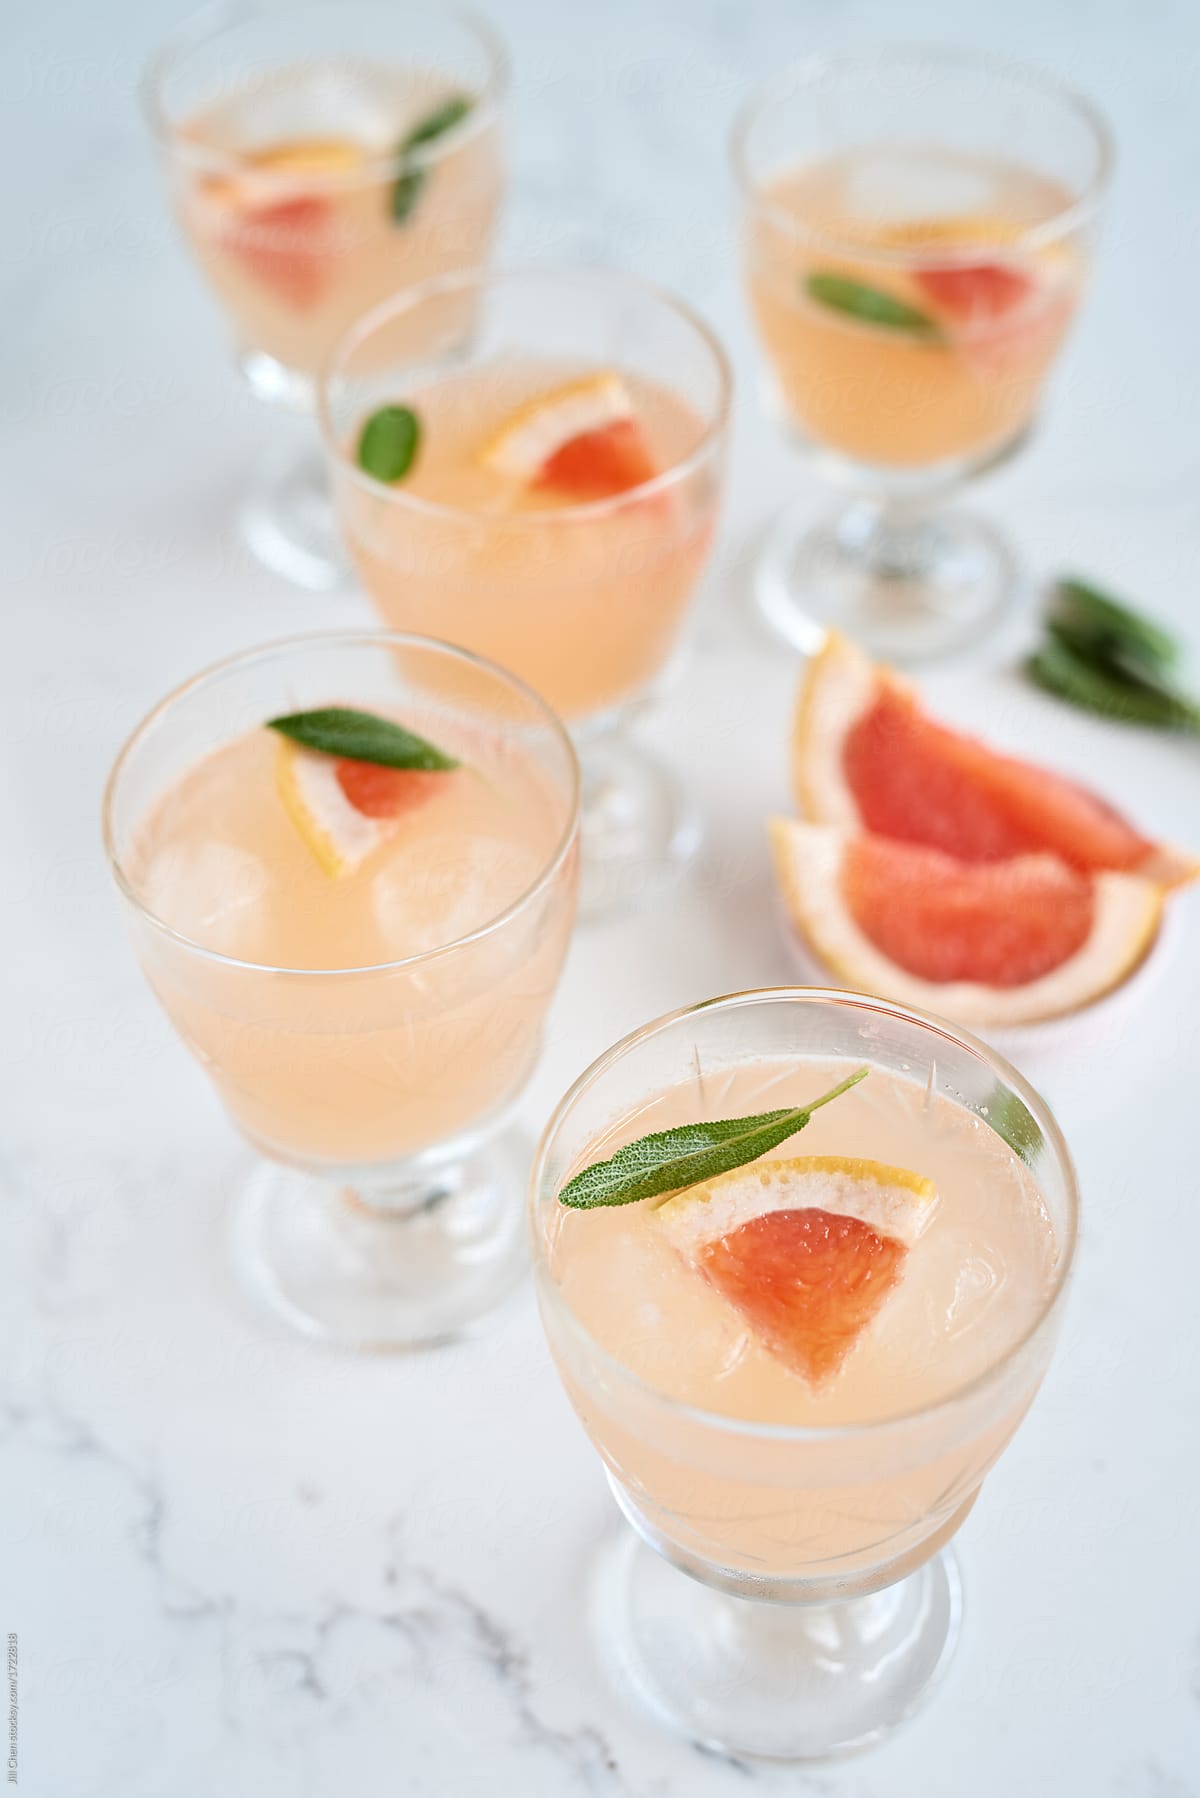 Ruby grapefruit and sage vodka cocktails